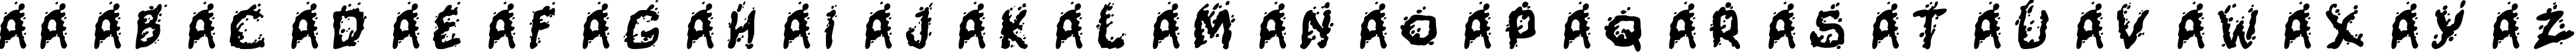 Пример написания английского алфавита шрифтом Mutant Supermodel